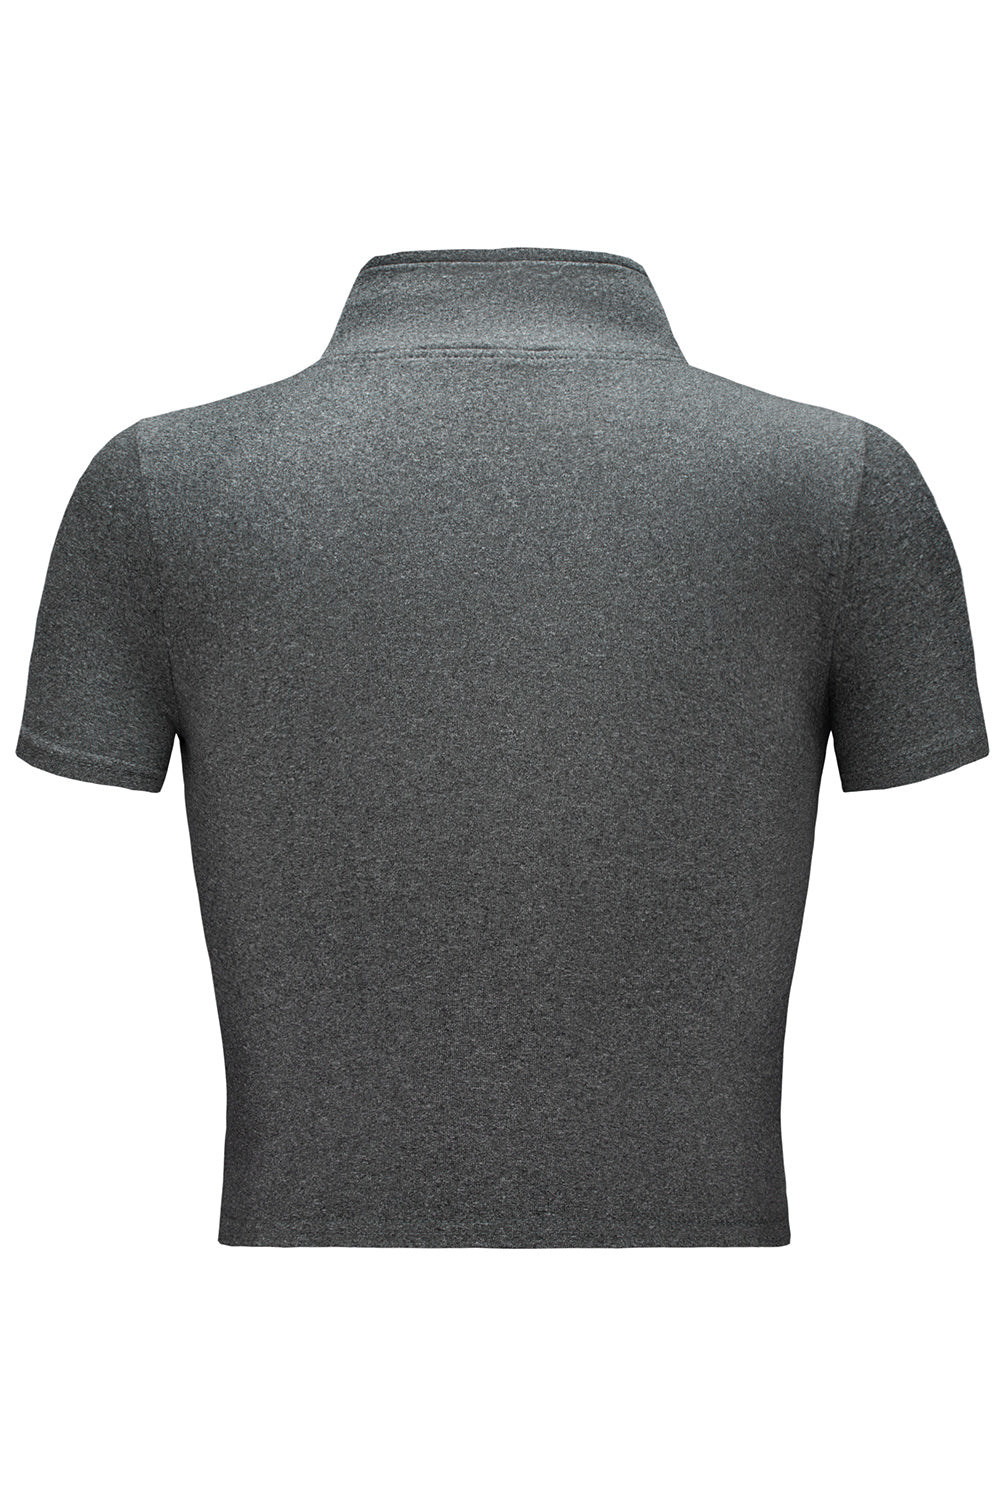 Black Half Zipper Short Sleeve Active Crop Top